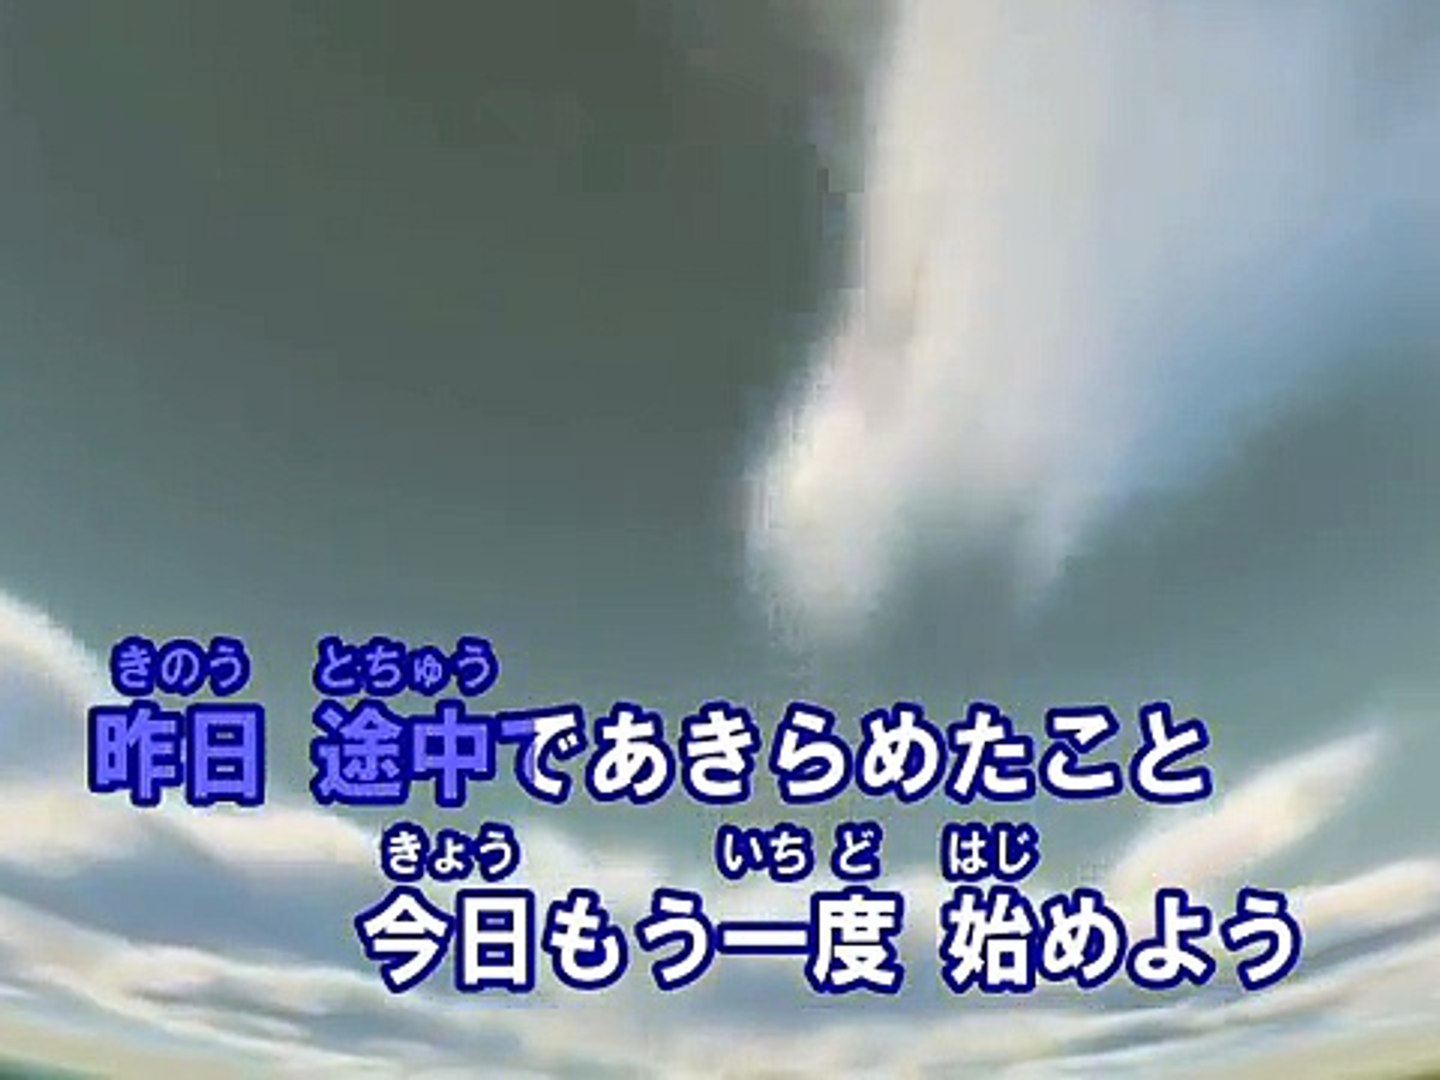 命は美しい カラオケ 乃木坂46 Dailymotion Video